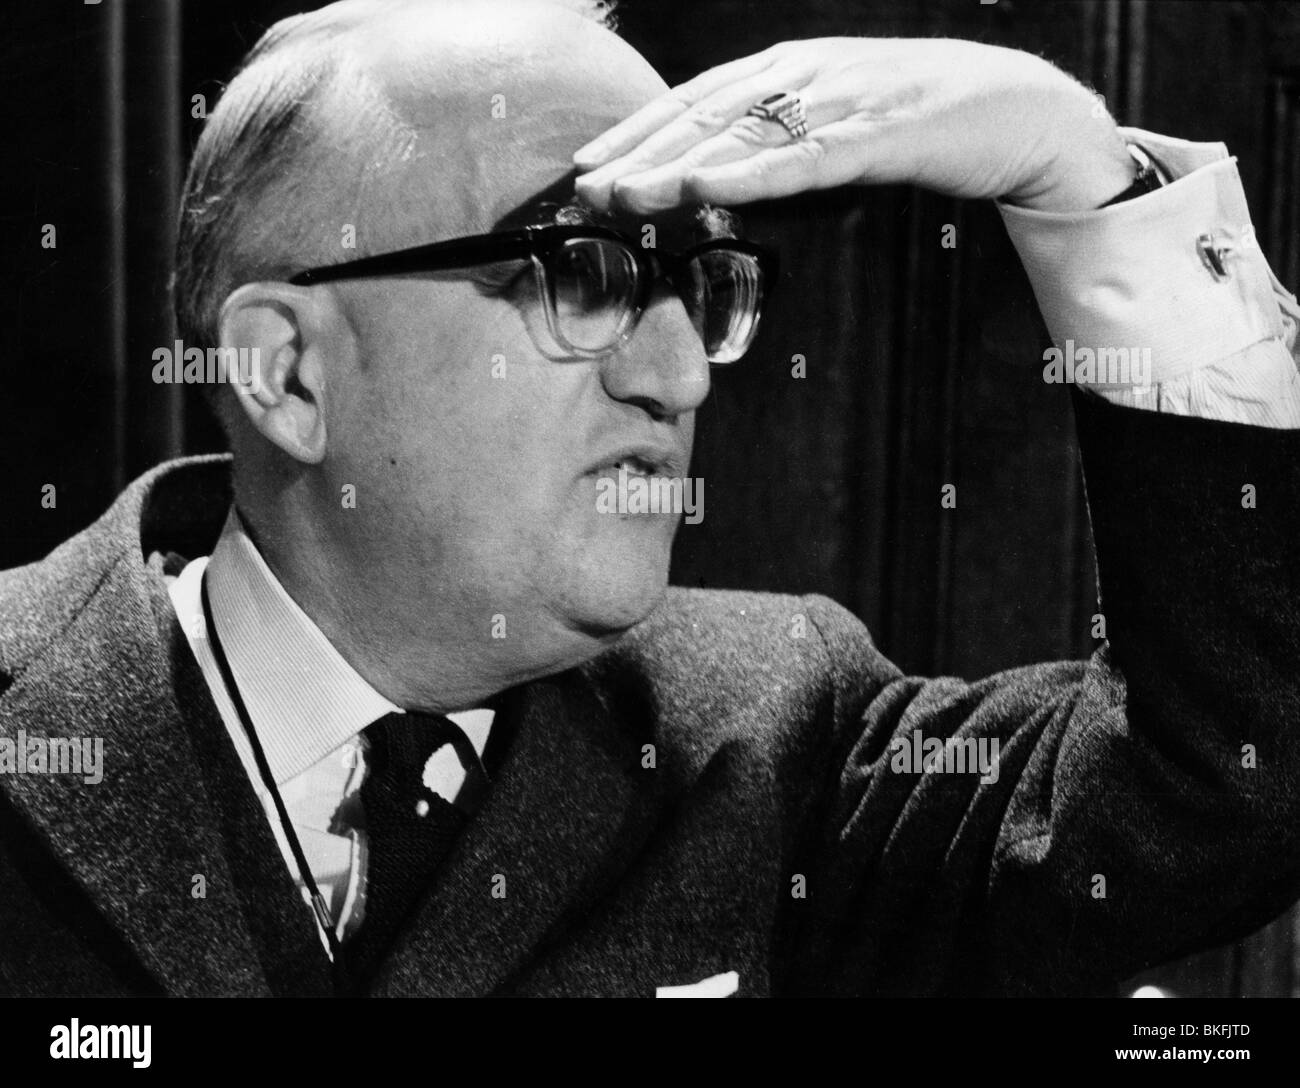 Hallstein, Walter, 17.11.1901 - 29.3.1982, giurista e politico tedesco (CDU), presidente della Commissione europea 1958 - 1967, ritratto, circa 1960, Foto Stock